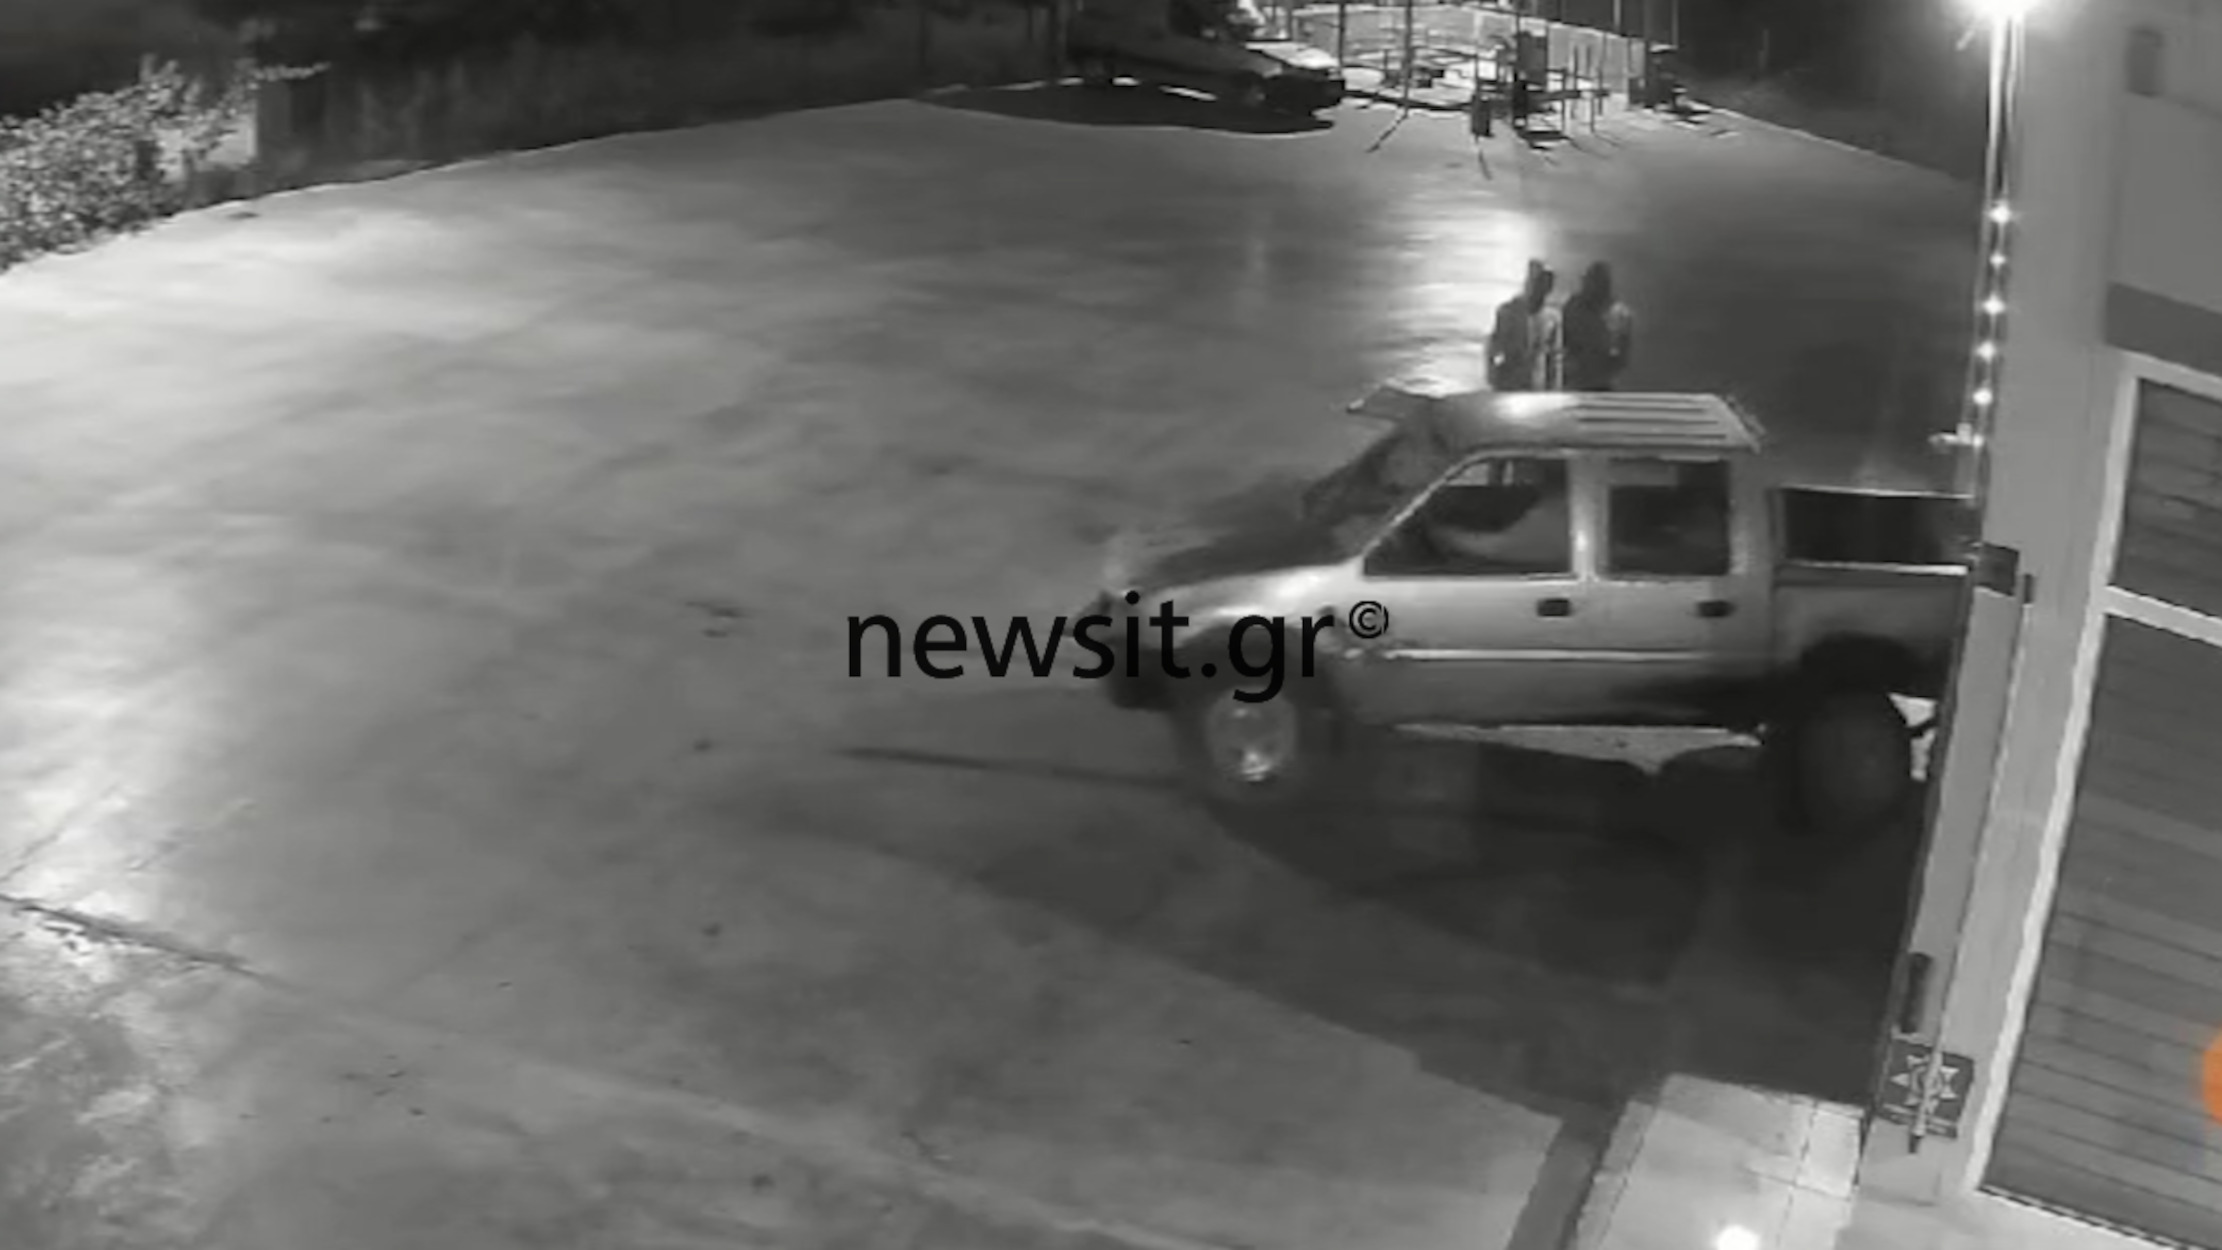 Θεσσαλονίκη: Βίντεο από τη δράση της συμμορίας που μπούκαρε με αυτοκίνητα σε καταστήματα